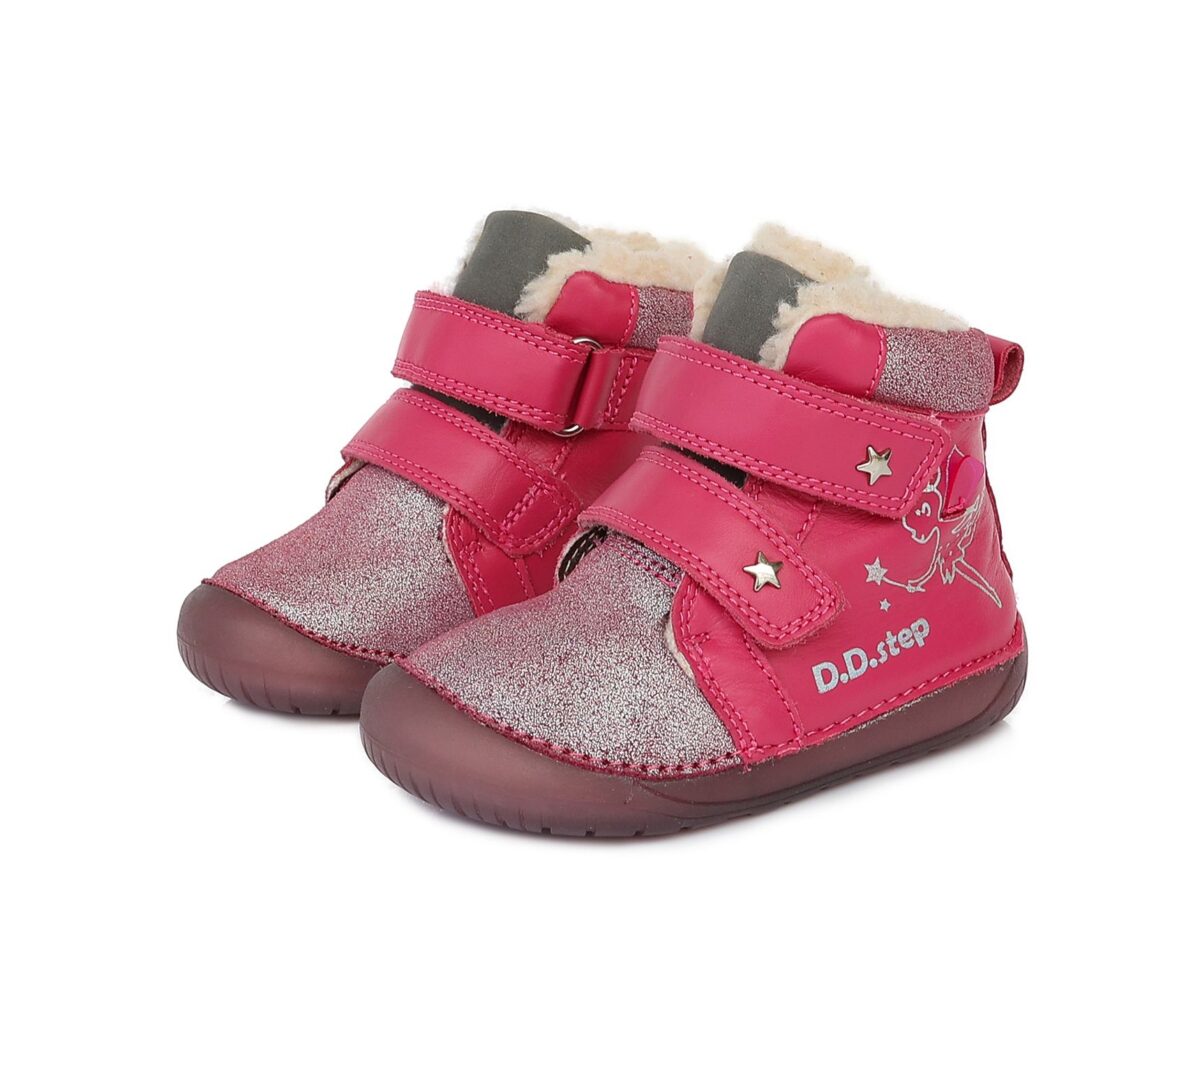 D.D.Step nahast talvesaapad, Dark Pink, Haldjas D.D.Step - HellyK - Kvaliteetsed lasteriided, villariided, barefoot jalatsid